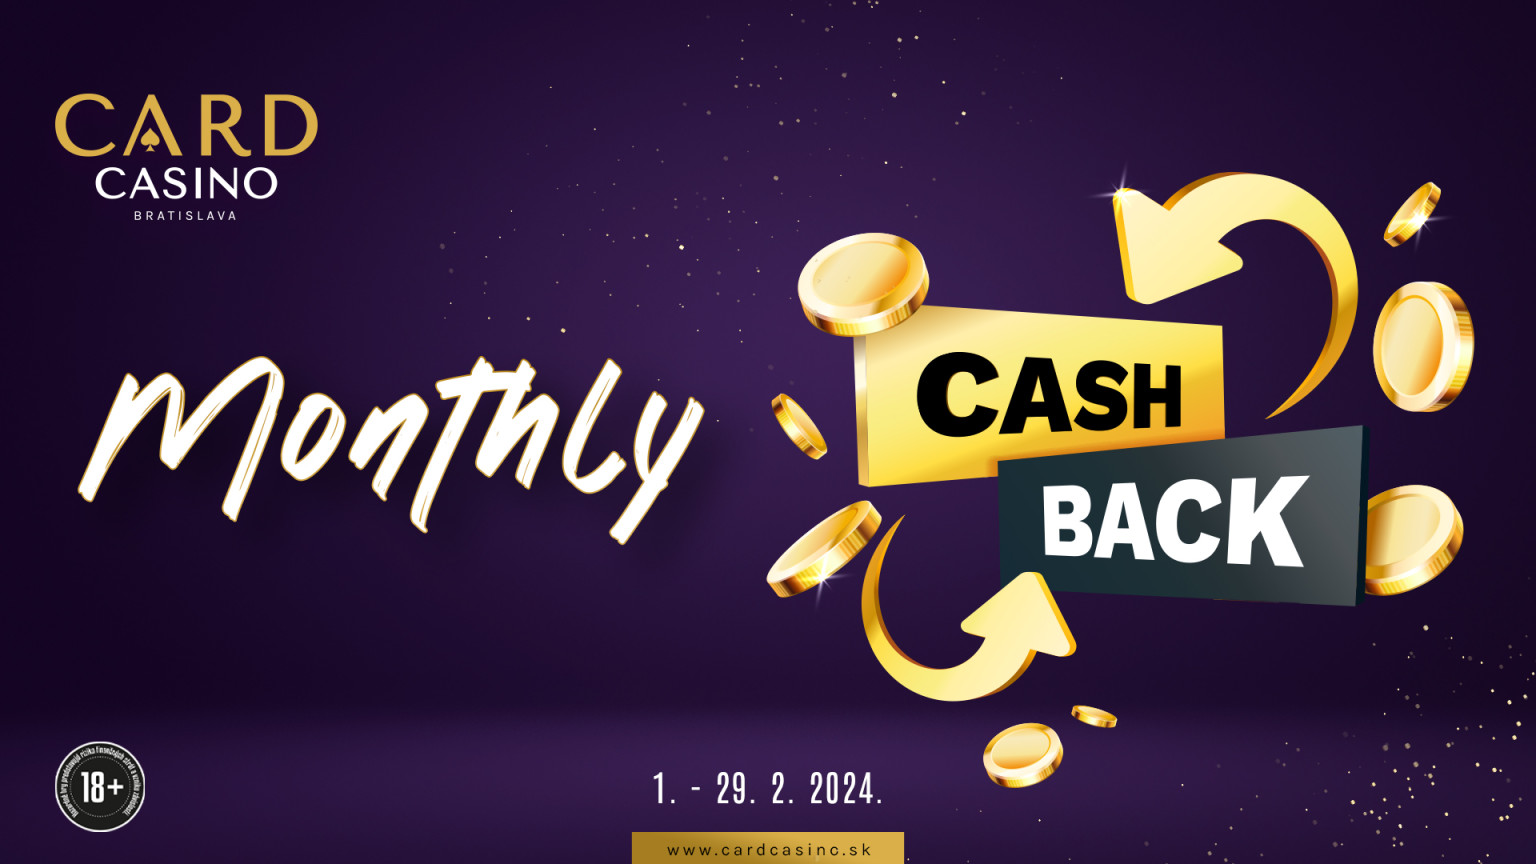 Spielen Sie Cash Game in CARD mit Cashback des Monats.